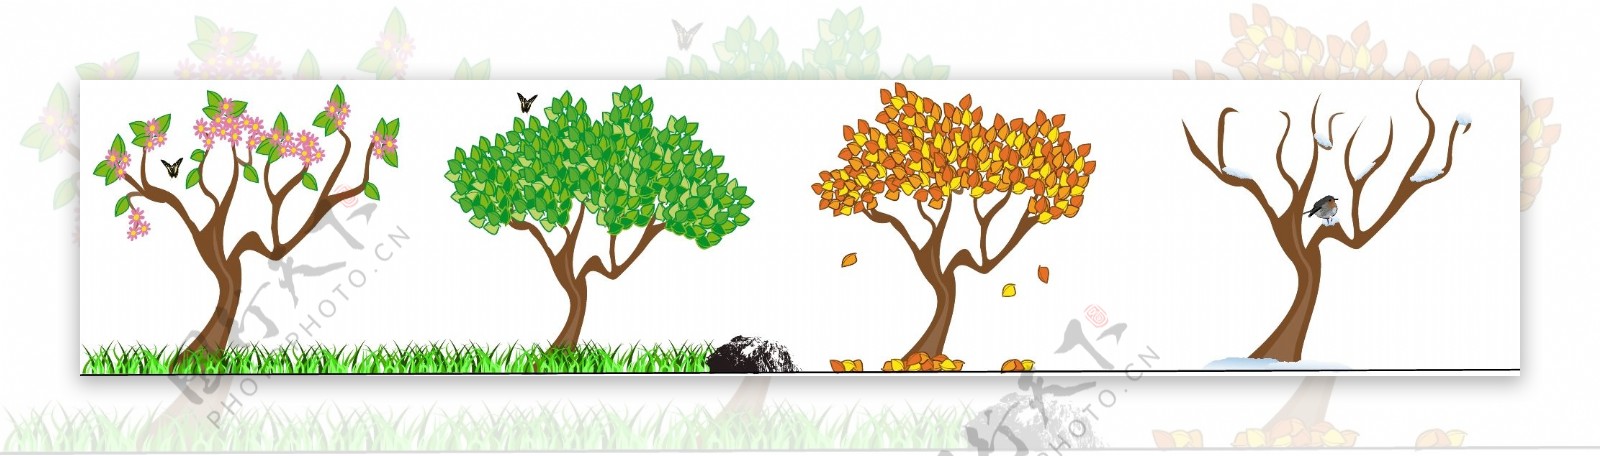 树的四季变化插图